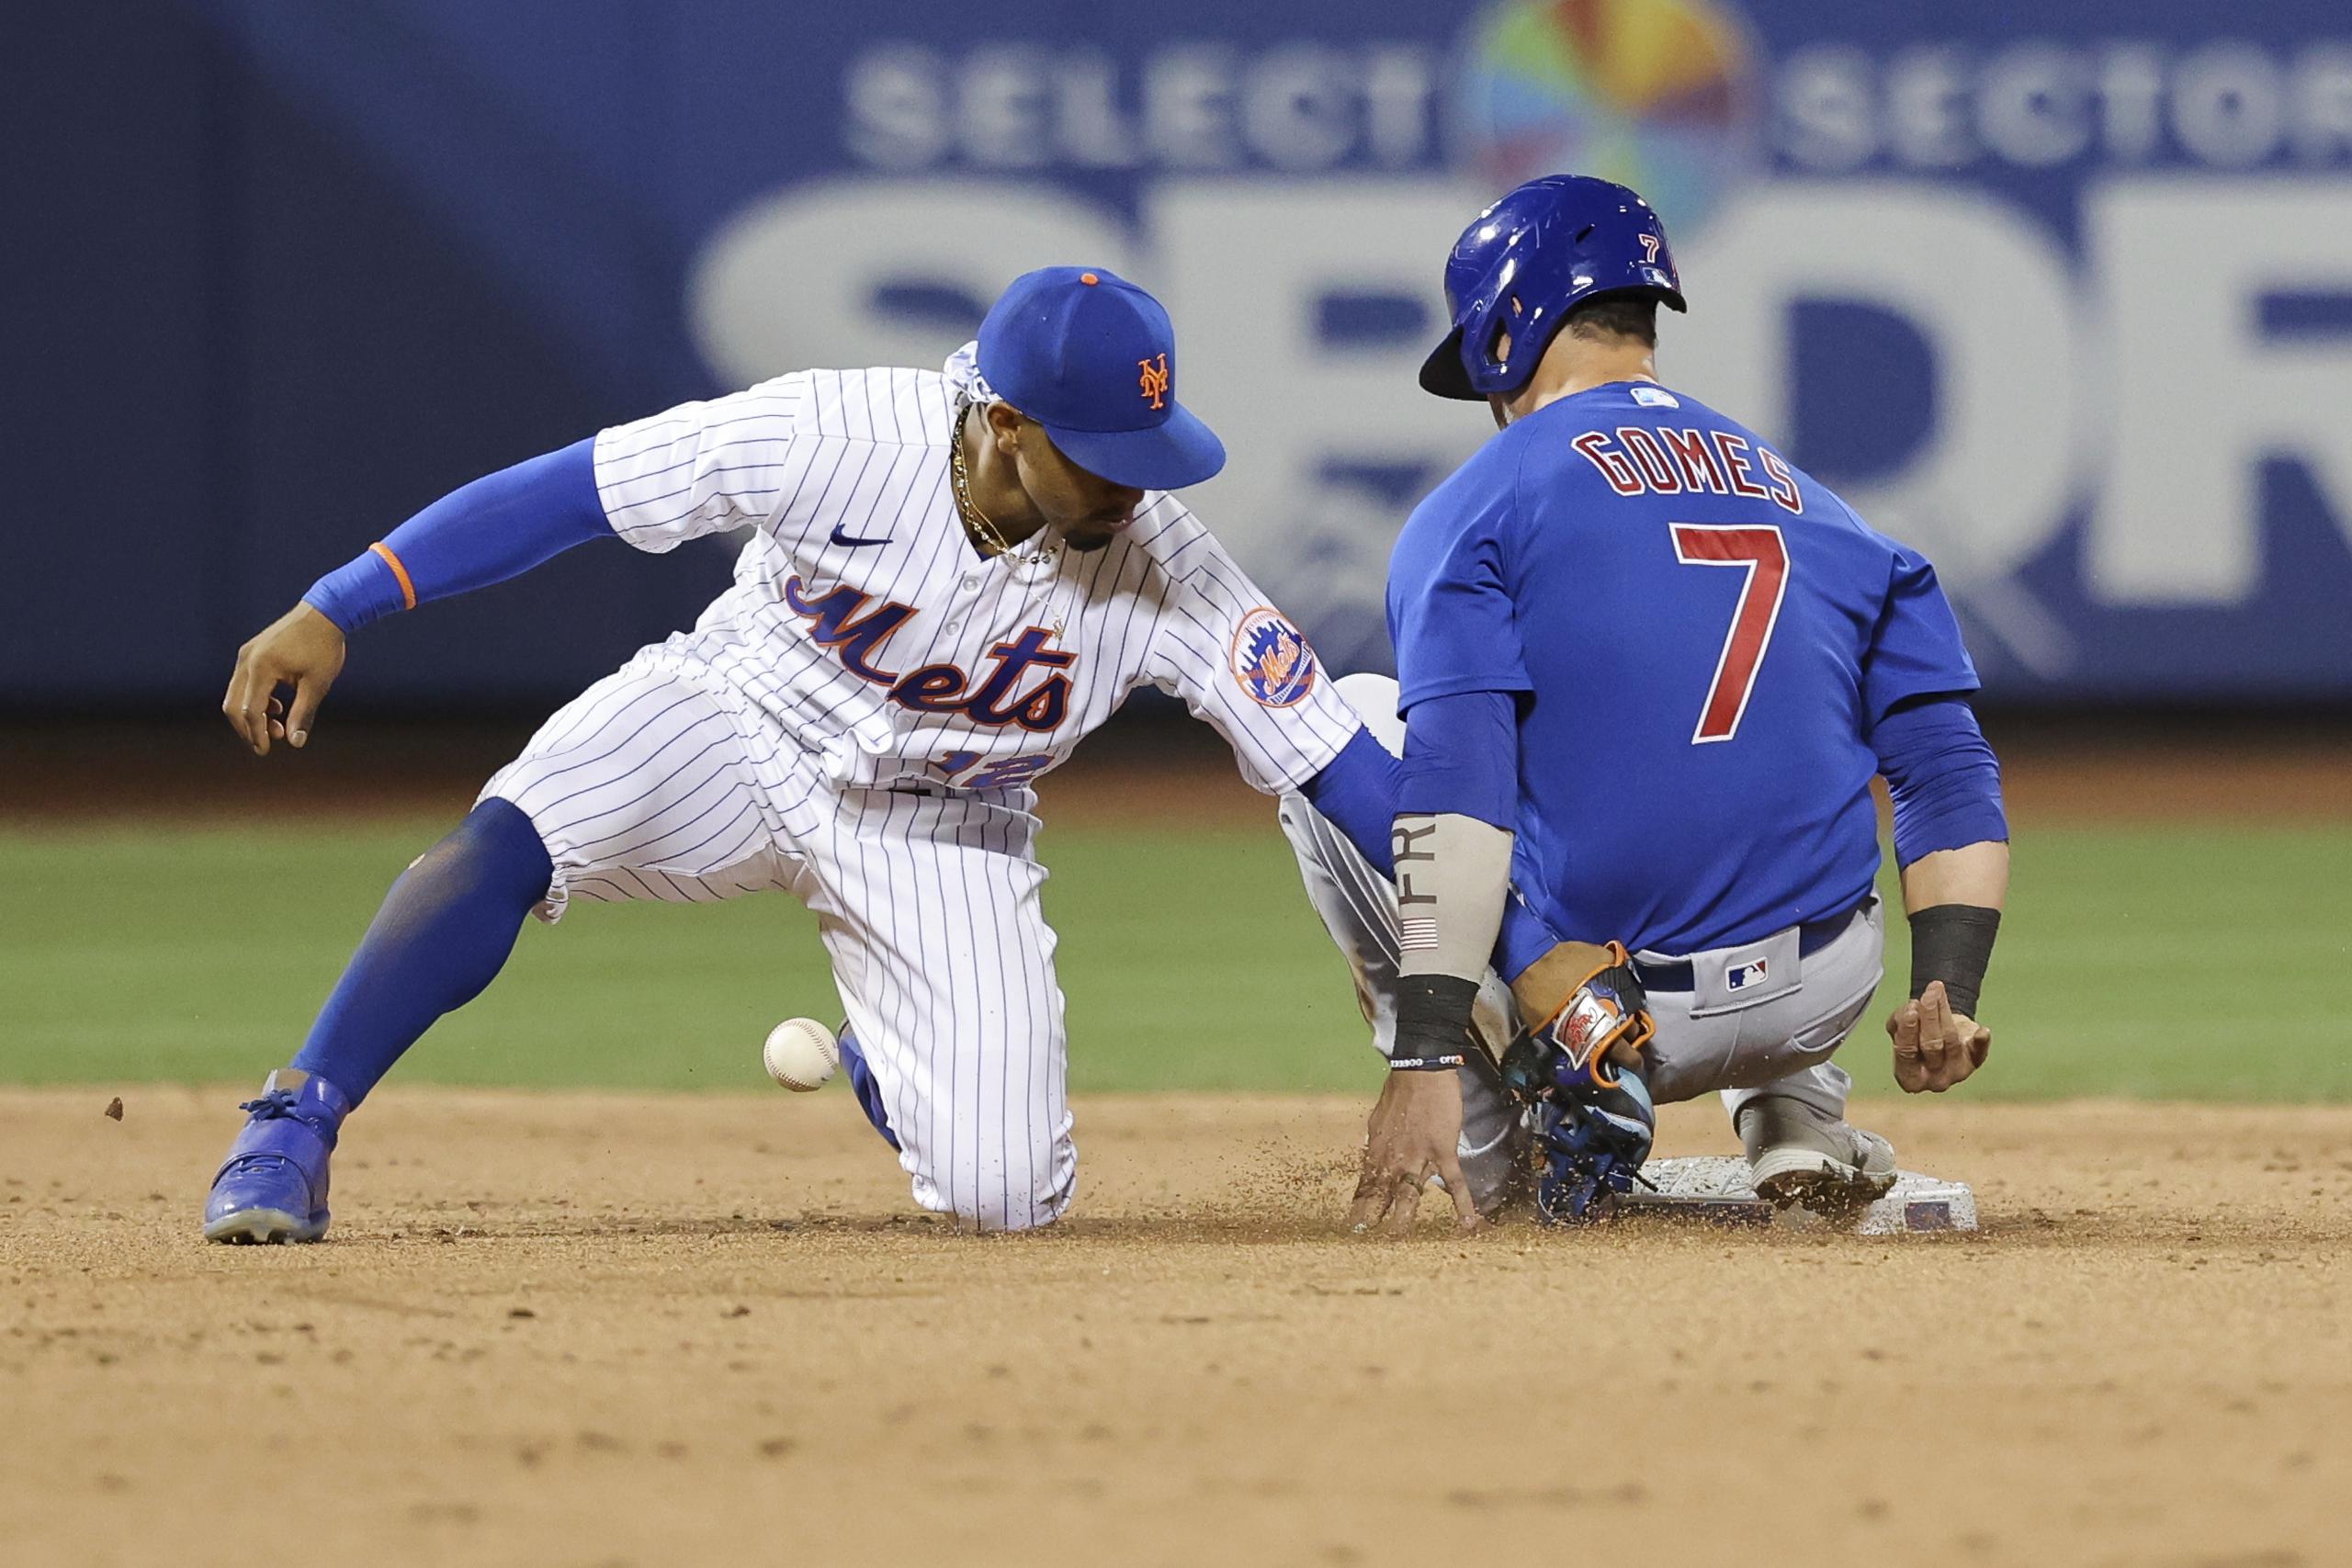 El campocorto boricua Francisco Lindor, de los Mets de Nueva York, pierde la pelota al tratar de poner fuera en segunda al corredor de los Cubs, Yan Gomes.